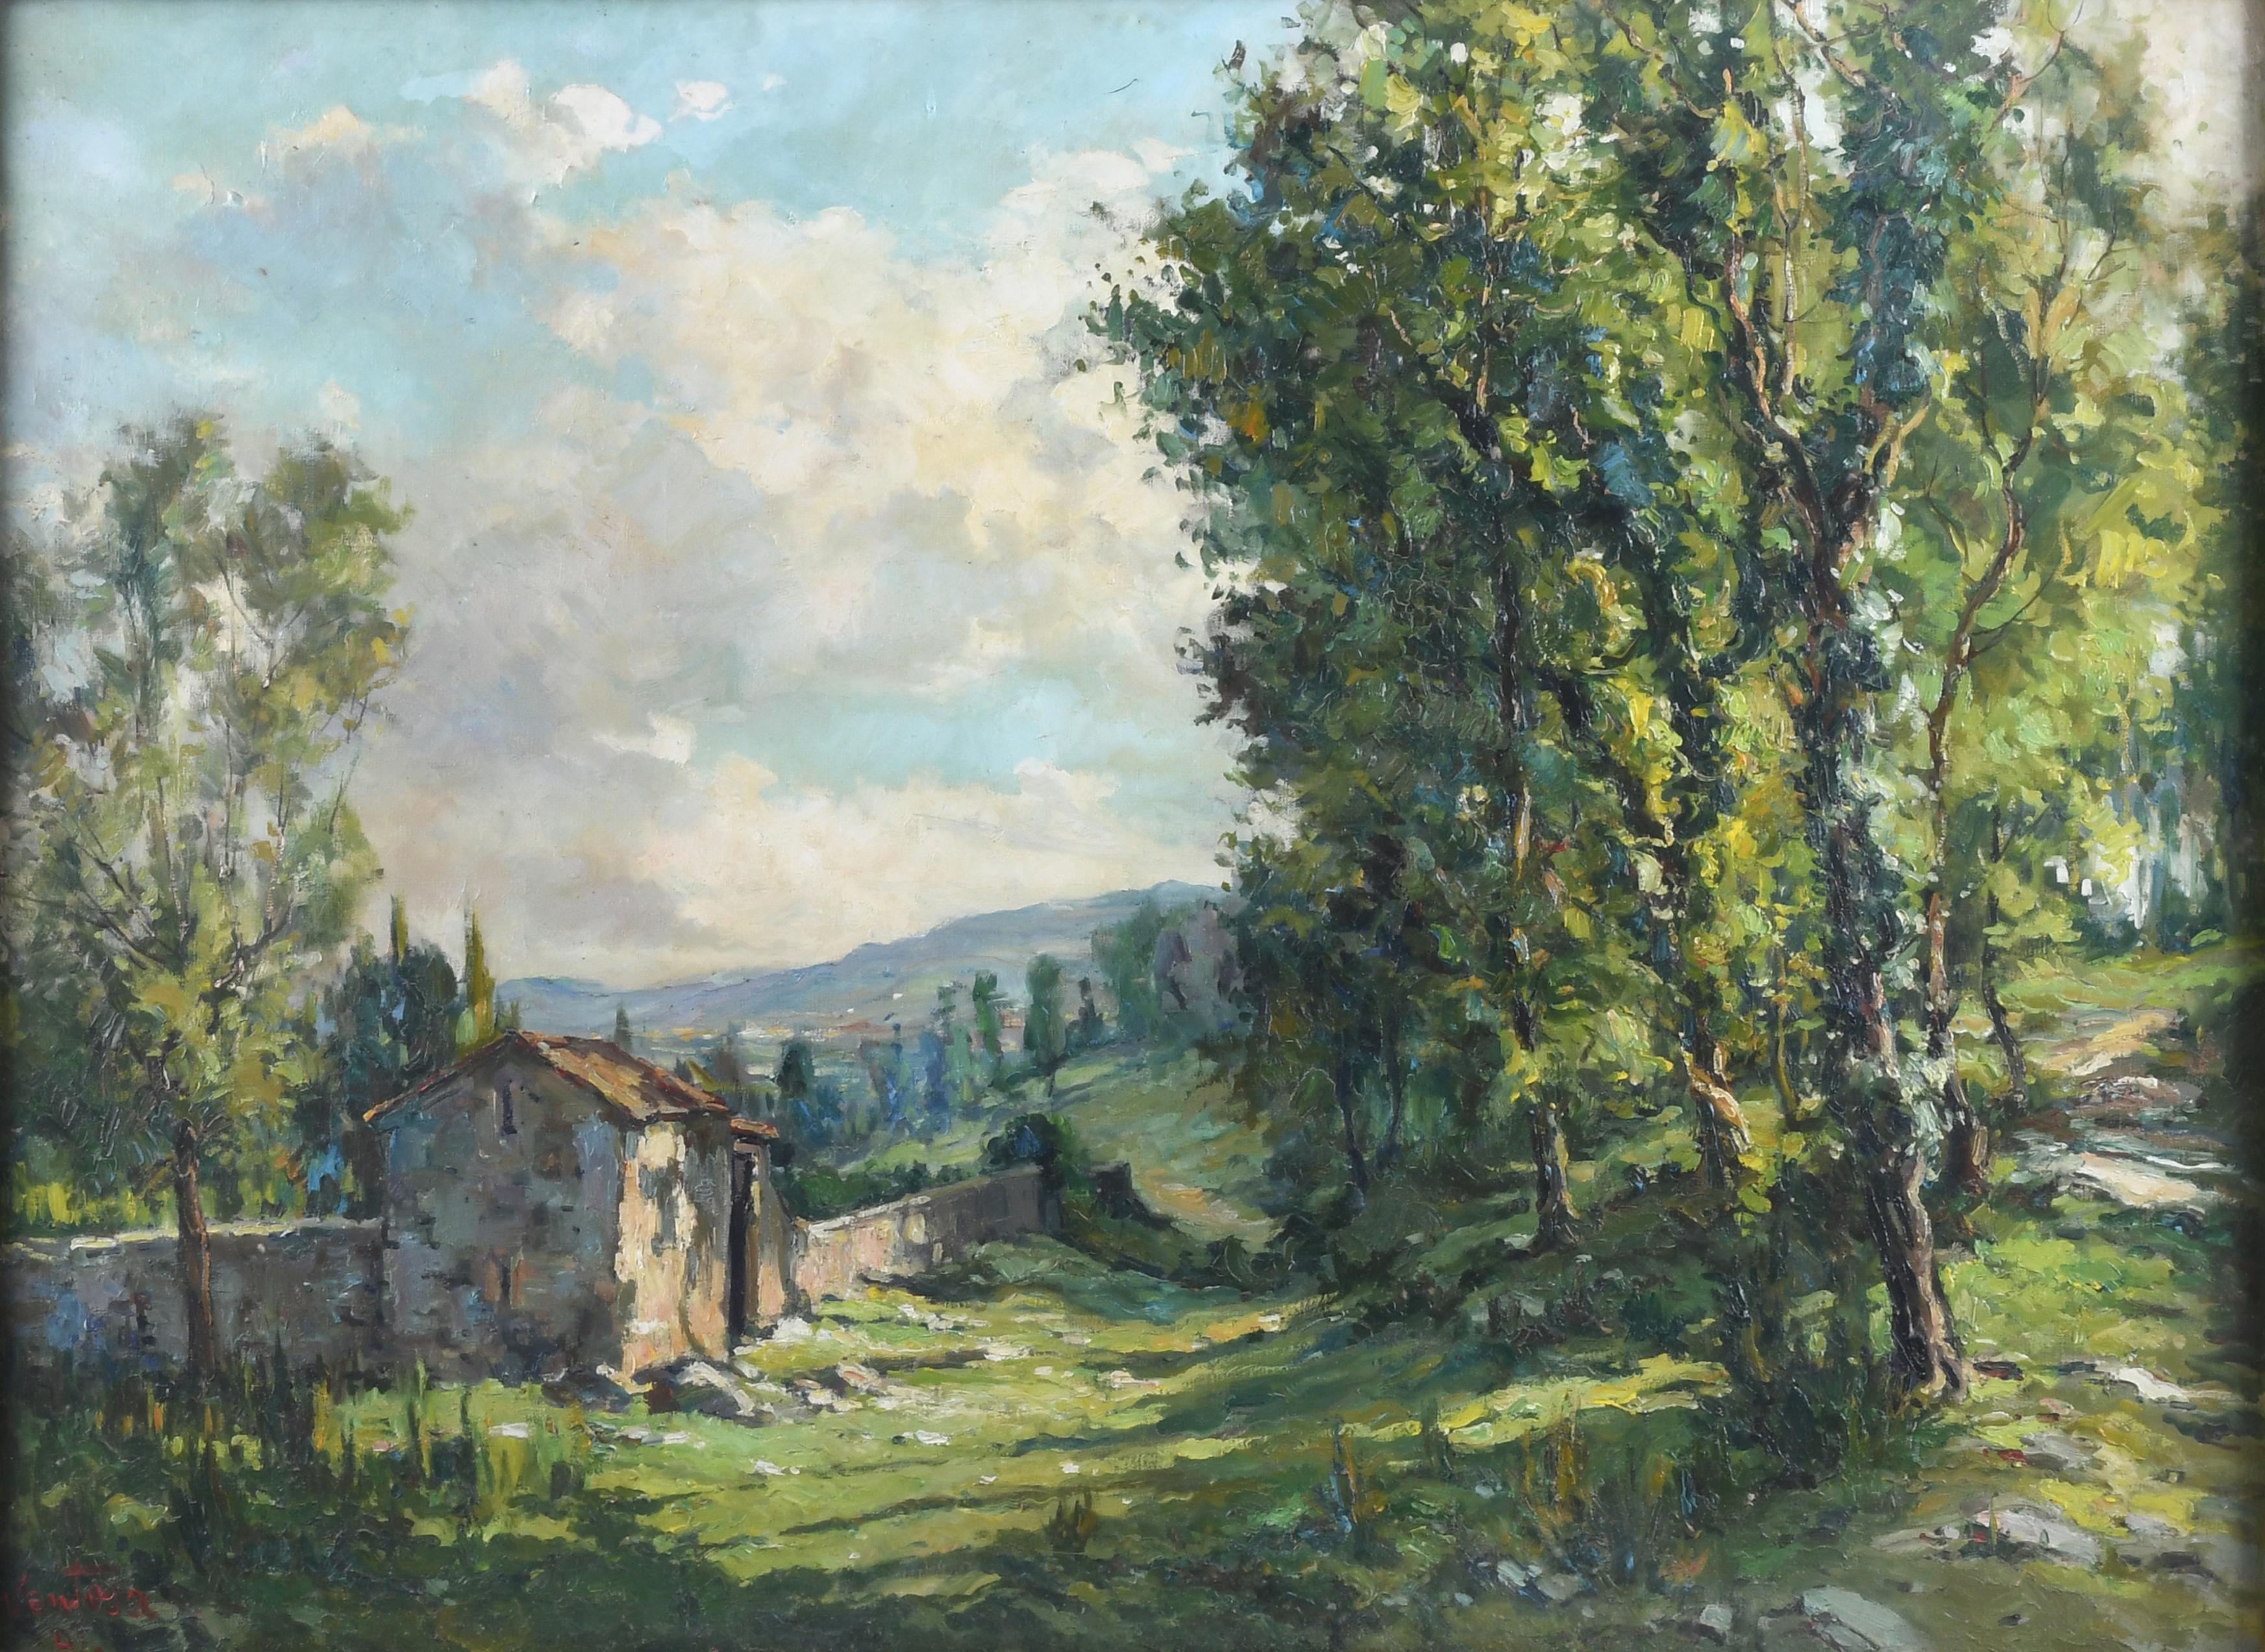 JOSEP VENTOSA DOMÈNECH (1897-1982). "PAISAJE", 1941.